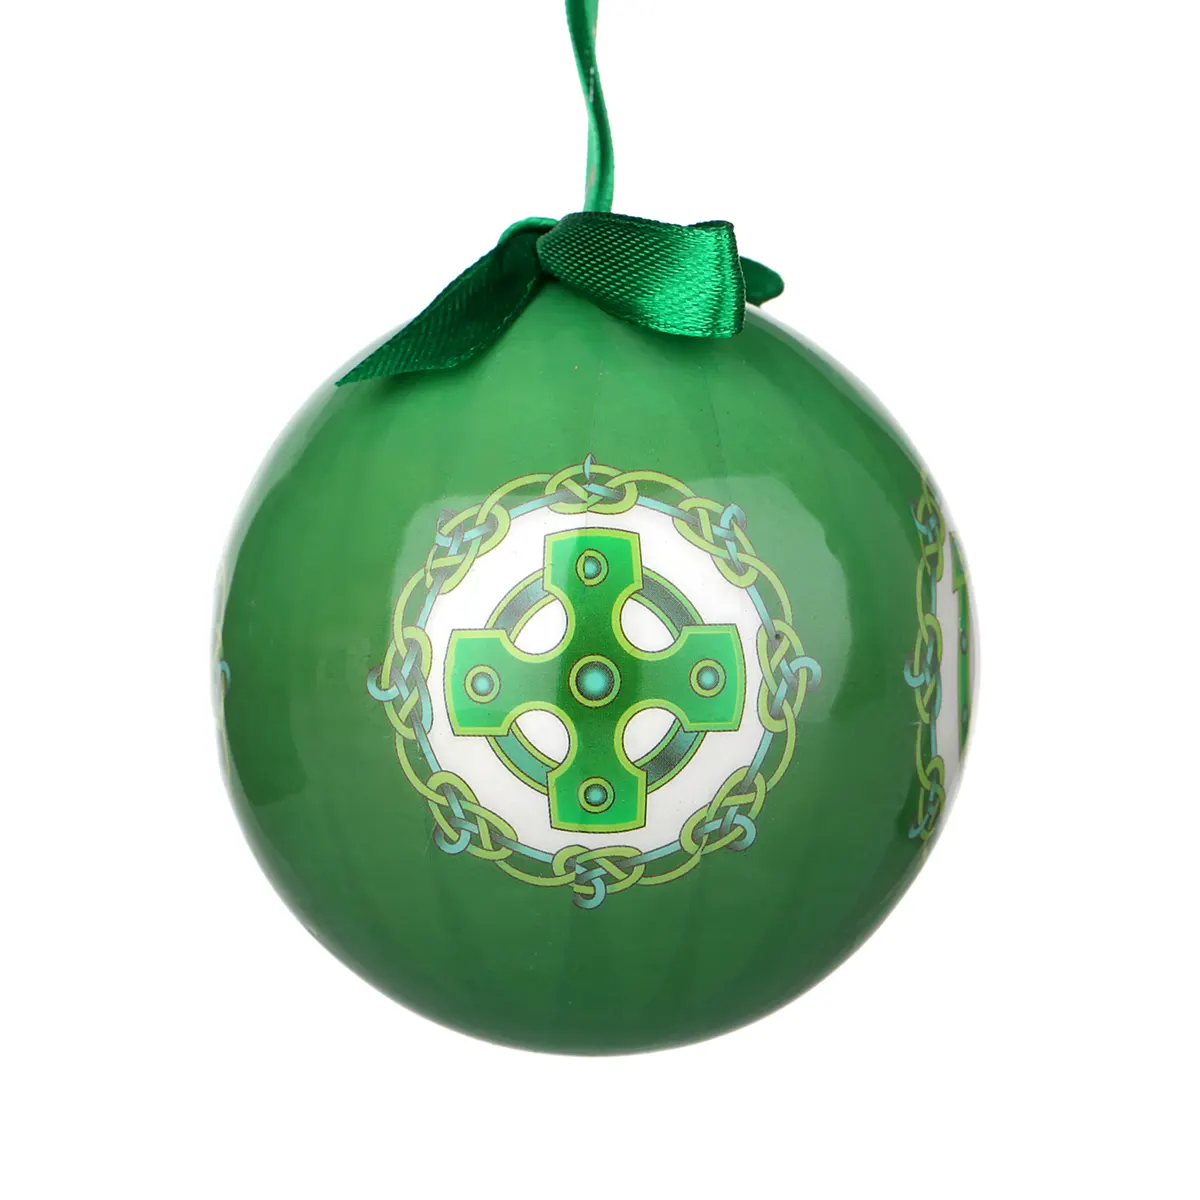 Irish Symbols - Traditionell handgefertigte Weihnachtskugel aus Irland mit vier irischen Symbolen